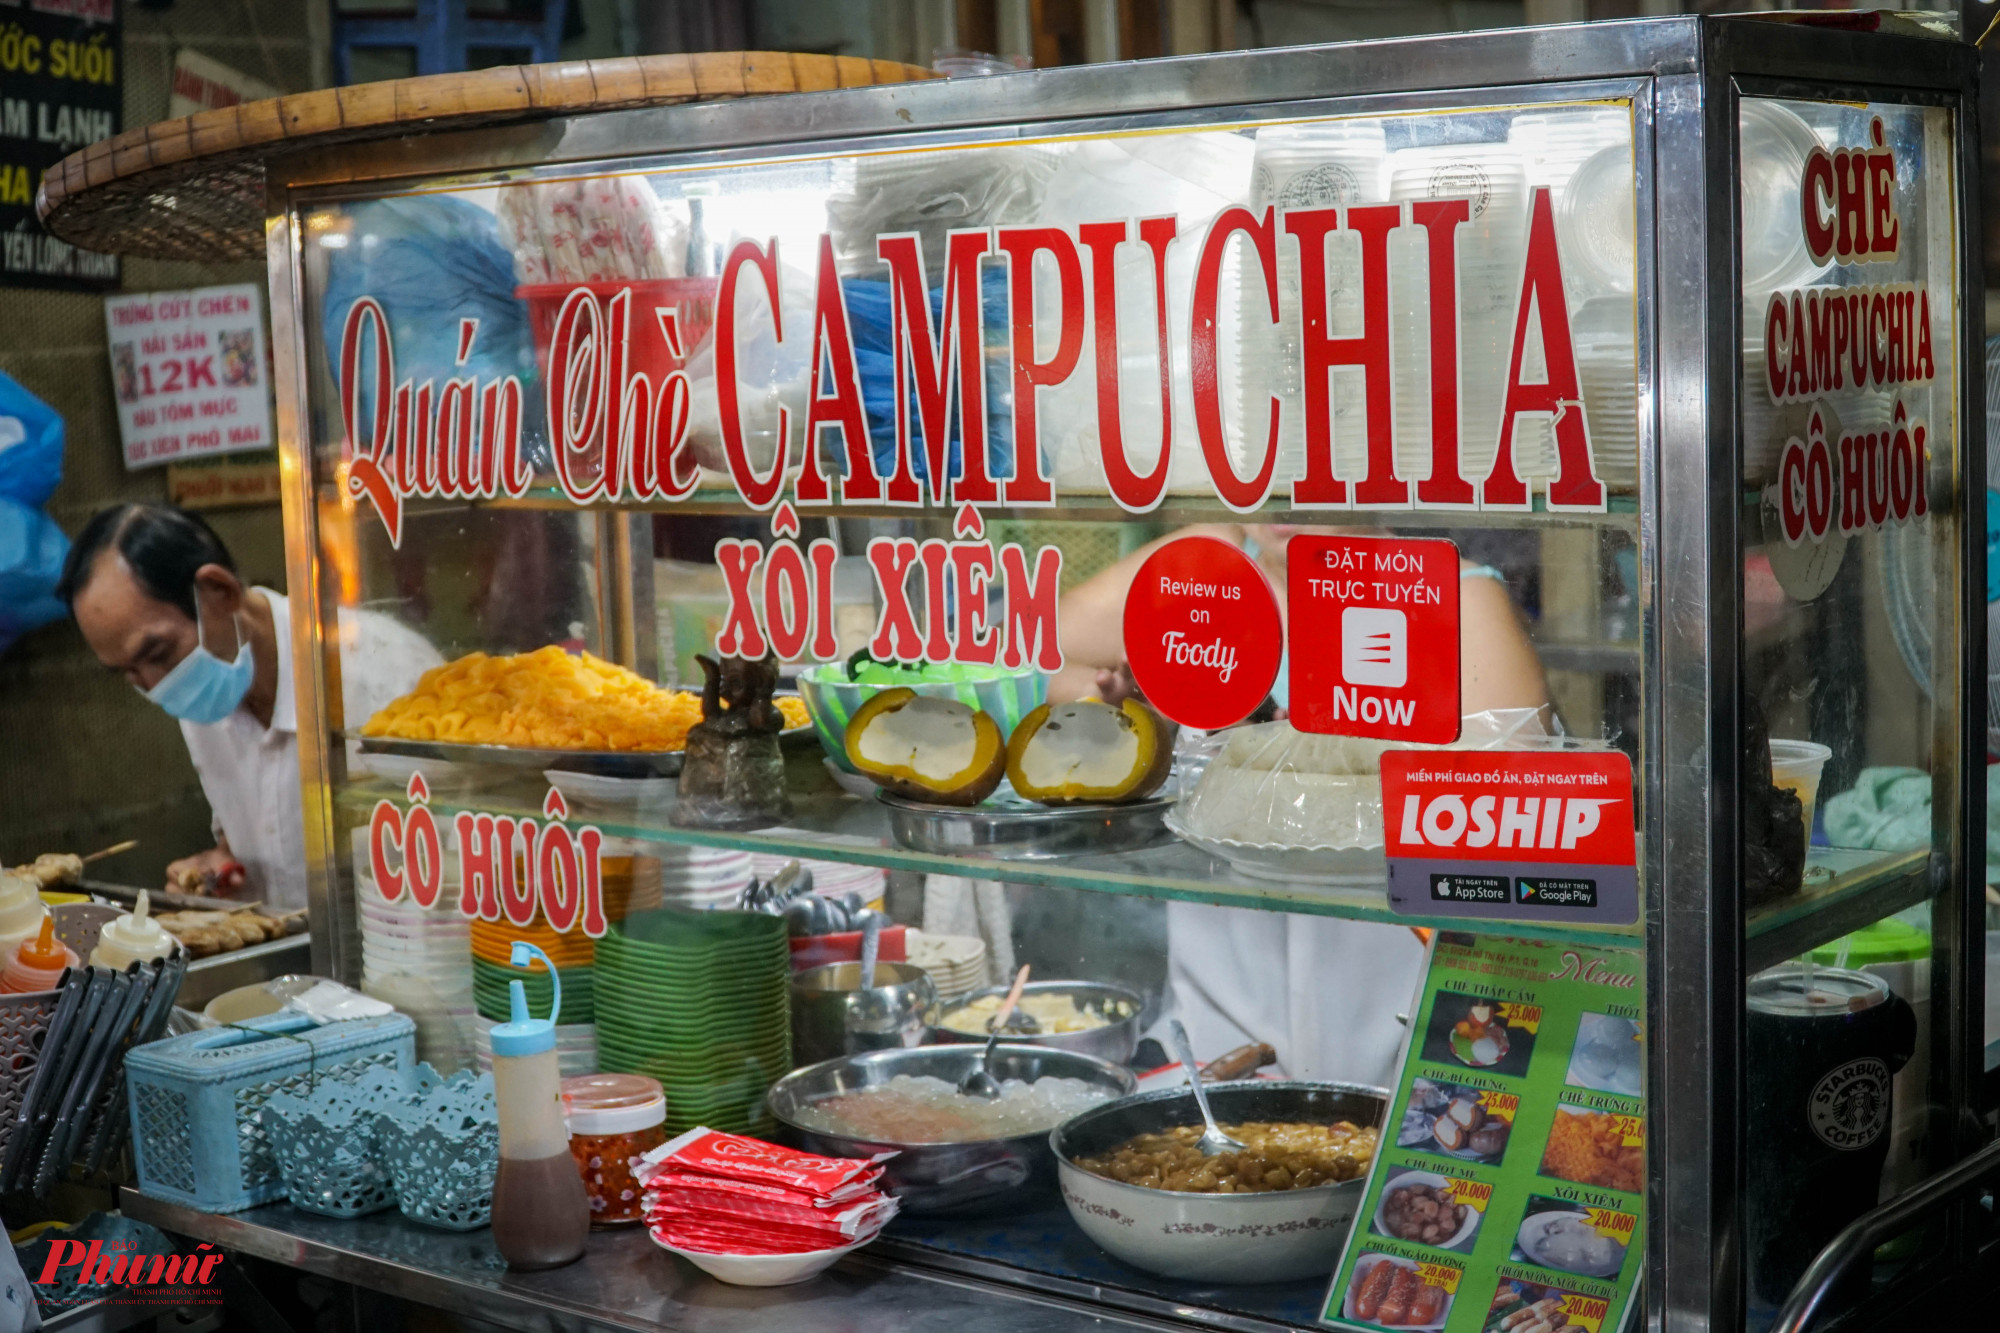 Đầu tiên là món Chè Campuchia nổi tiếng tại chờ Hồ Thị Kỷ, được biết, món này có nguồn gốc từ những người Campuchia qua Chợ Lớn định cư, rồi ở đây buôn bán, giữ lại món chè đến tận ngày hôm nay